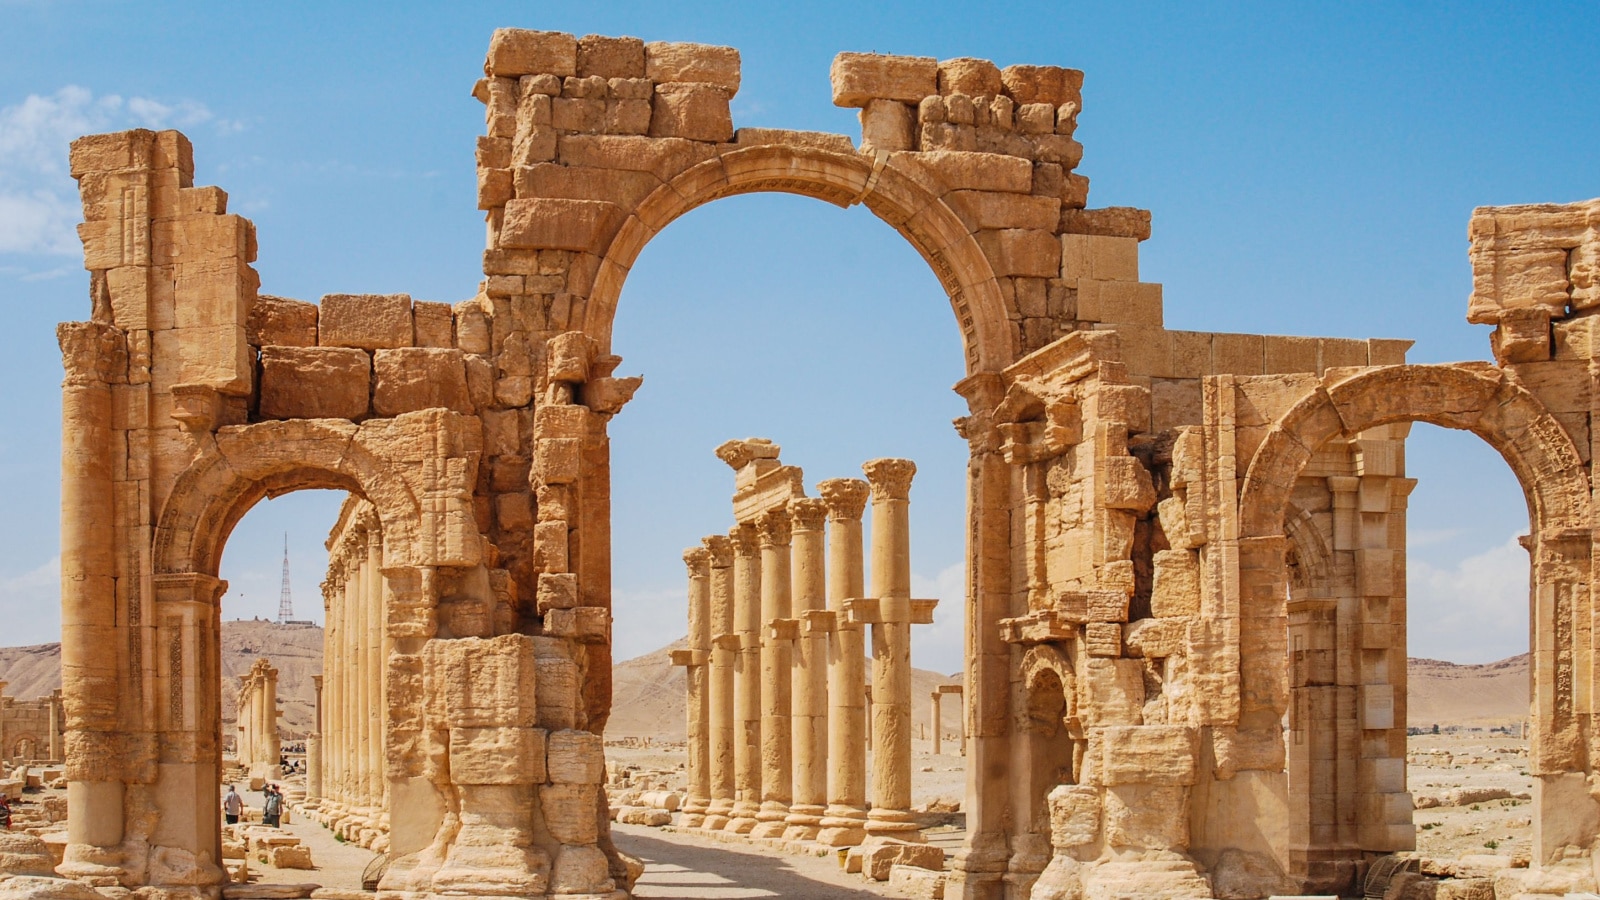 Palmyra, Syria - Ruins Old Greco Roman